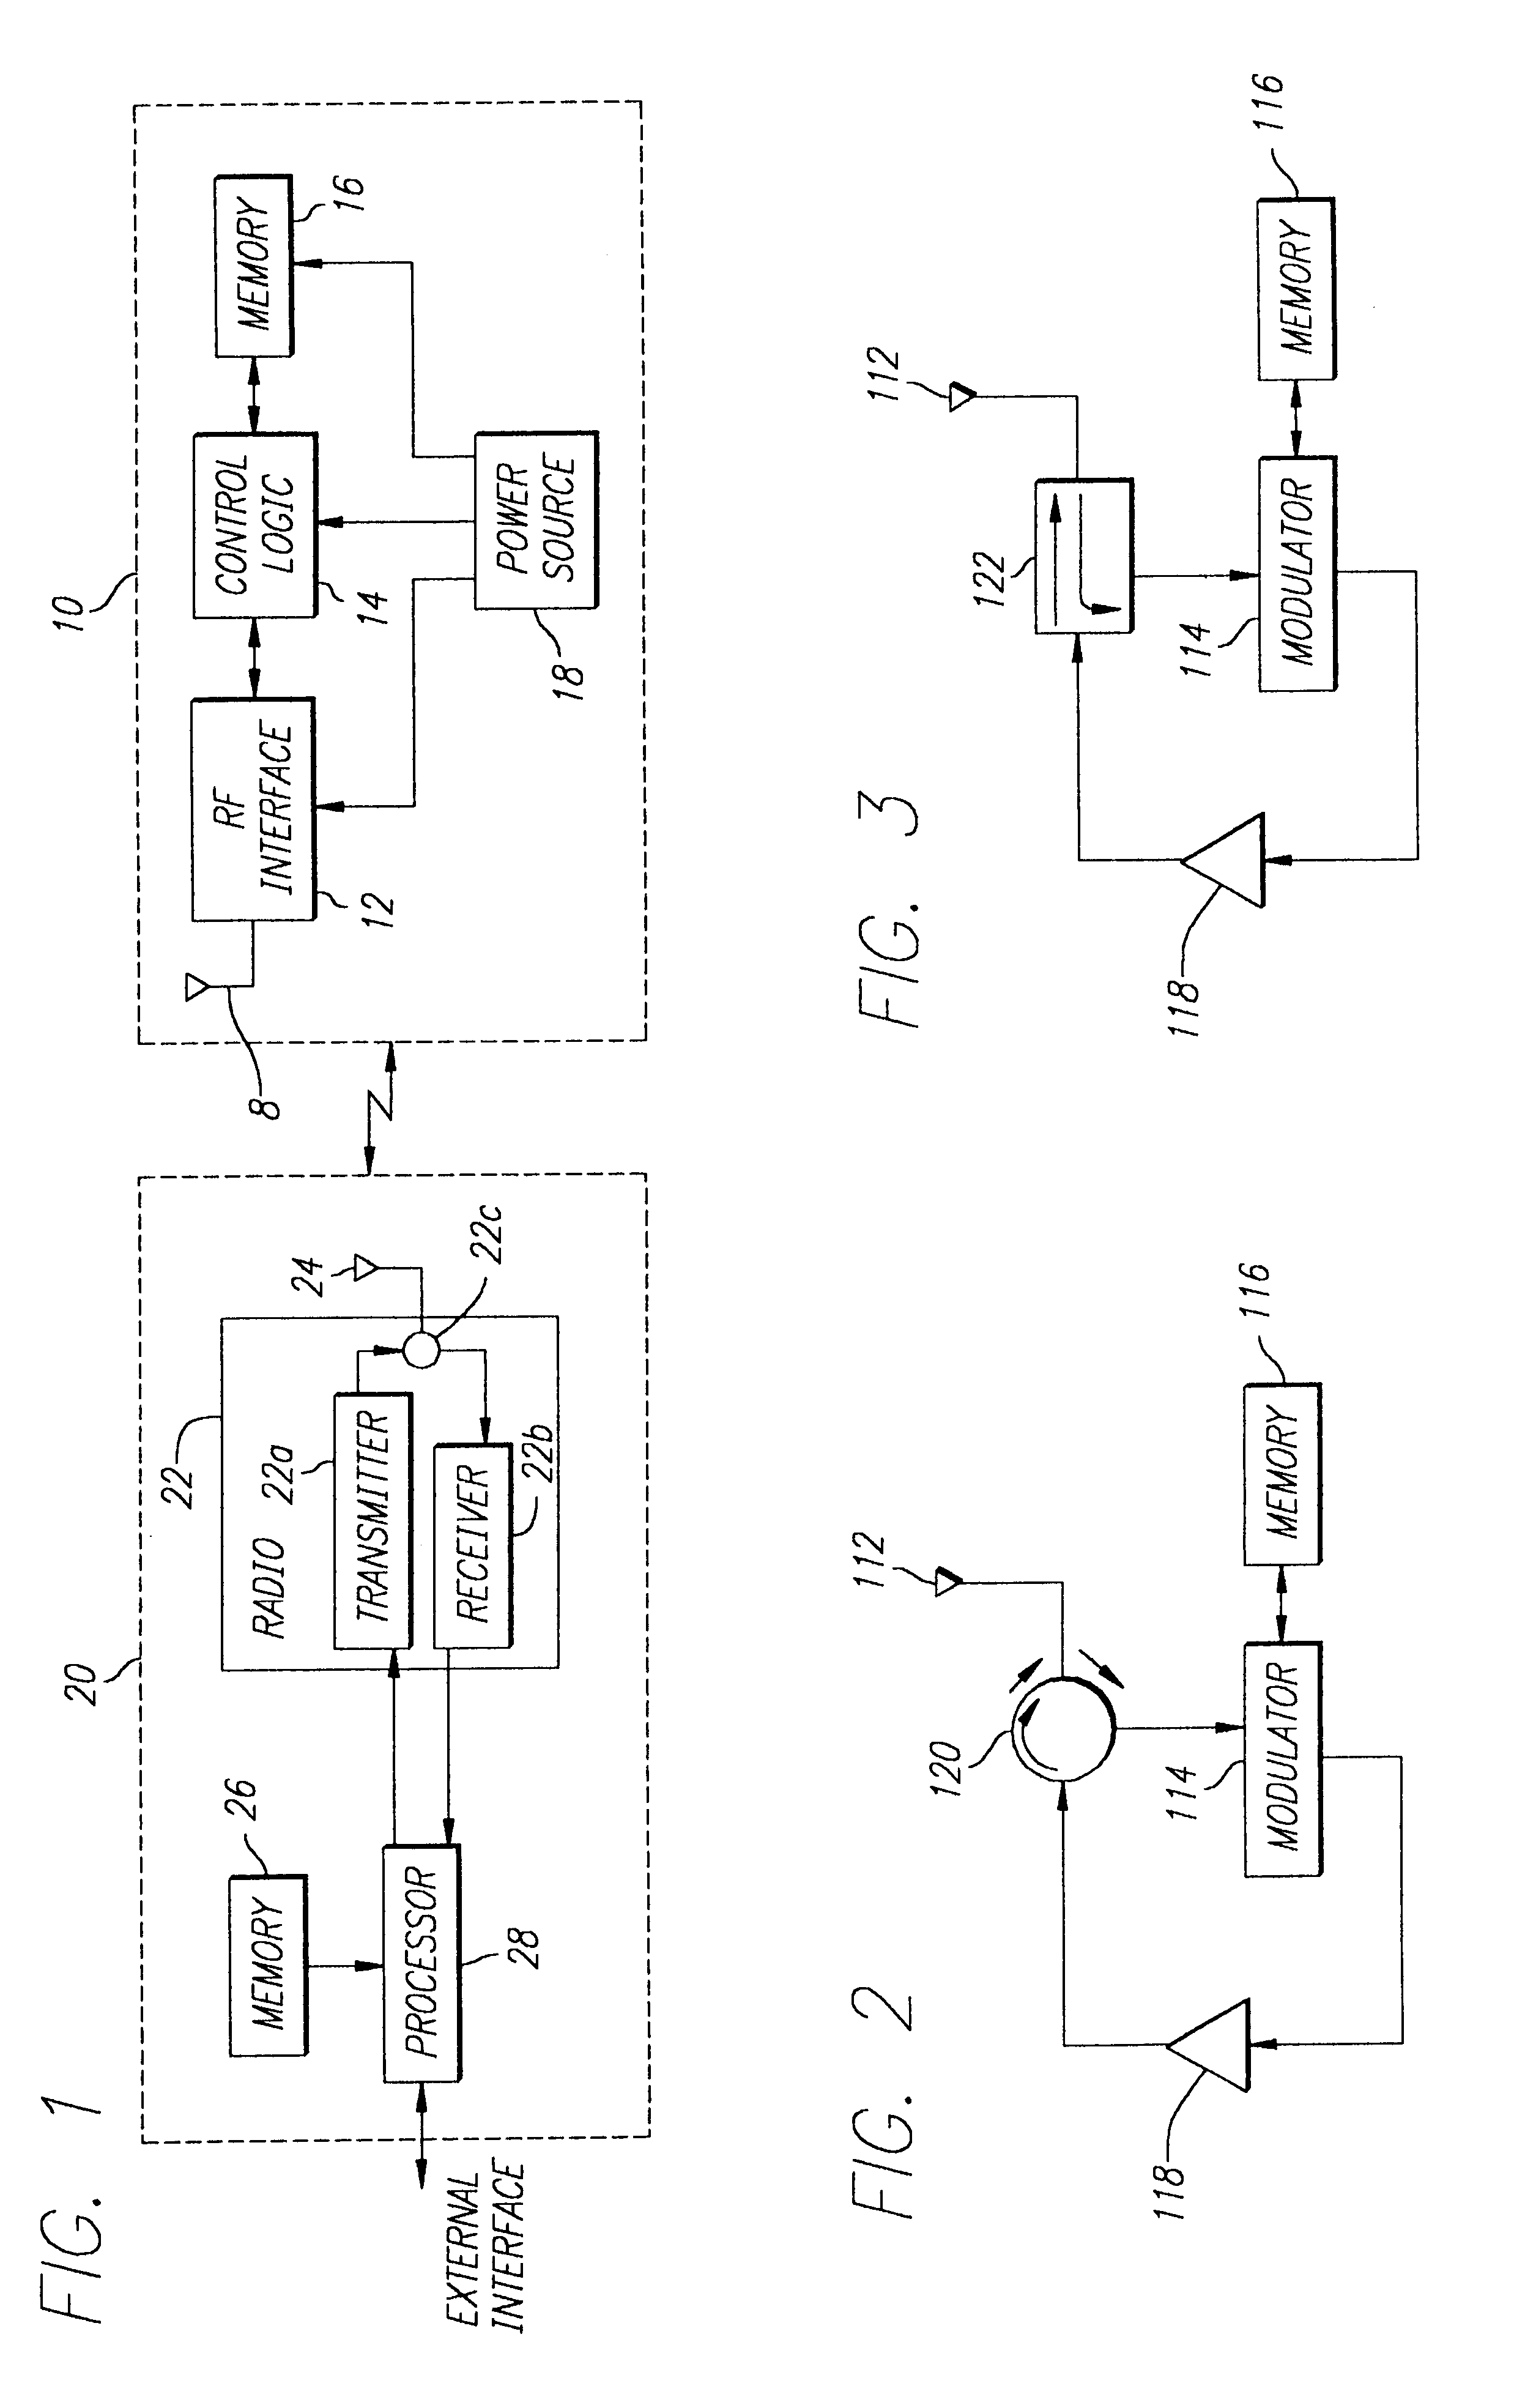 RFID transponder having active backscatter amplifier for re-transmitting a received signal